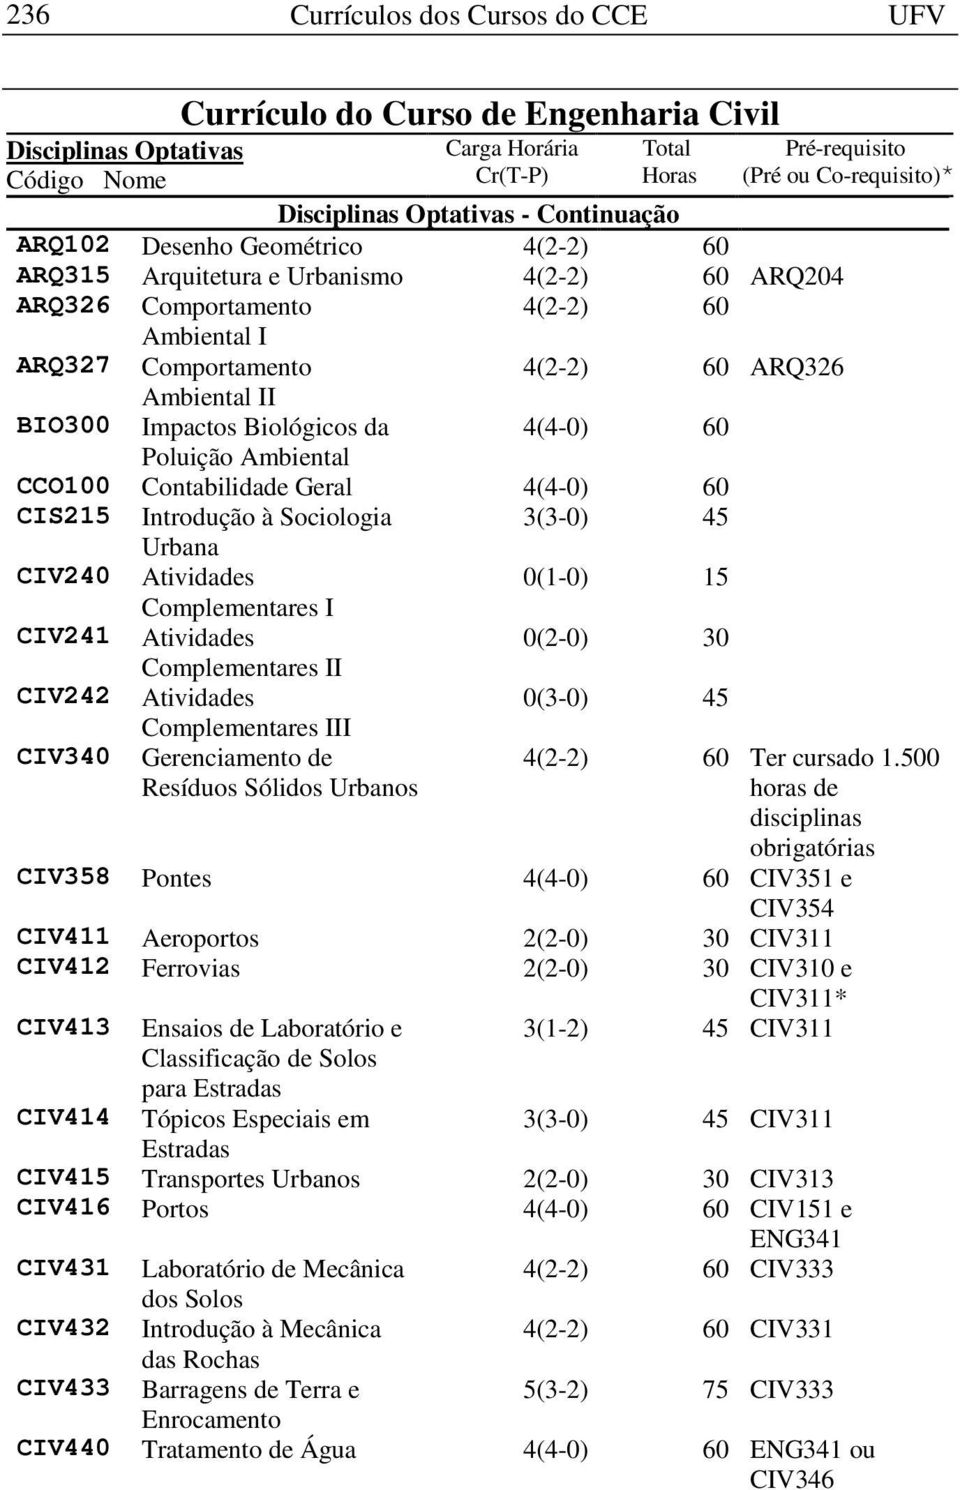 3(3-0) 45 Urbana CIV240 Atividades 0(1-0) 15 Complementares I CIV241 Atividades 0(2-0) 30 Complementares II CIV242 Atividades 0(3-0) 45 Complementares III CIV340 Gerenciamento de Resíduos Sólidos